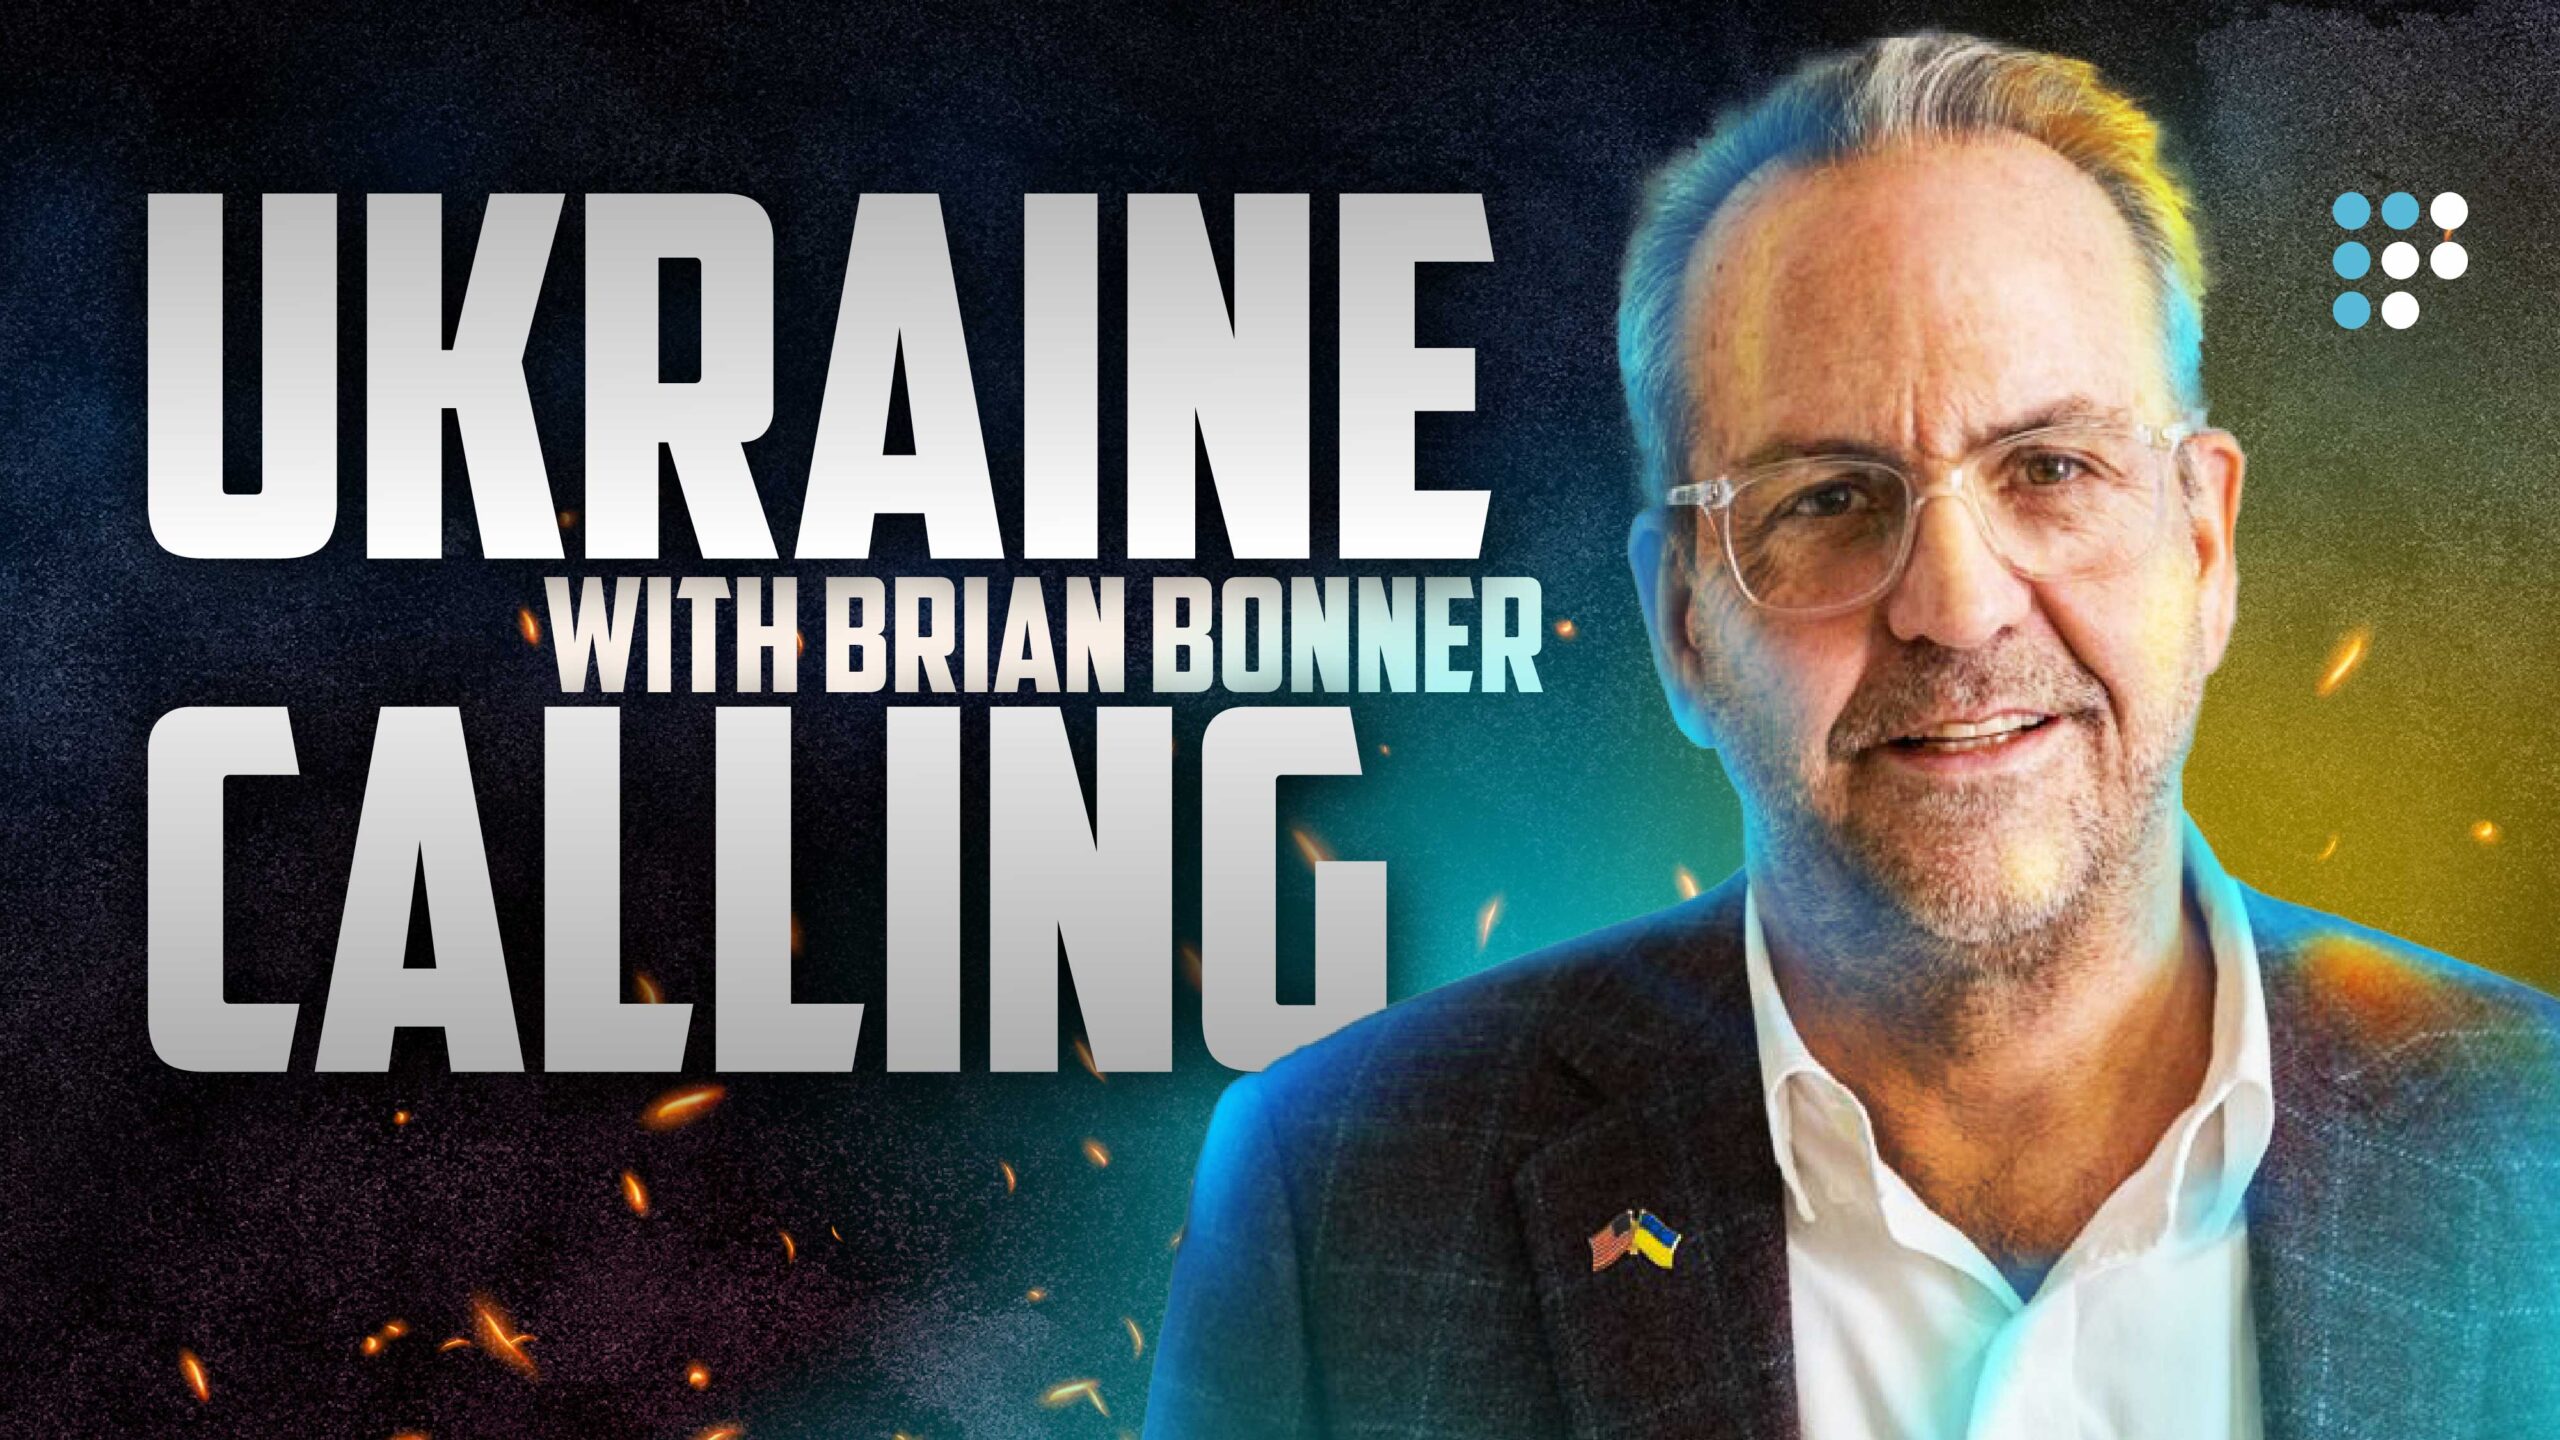 Ukraine Calling with Brian Bonner: Громадське радіо запустило англомовний подкаст у новому форматі